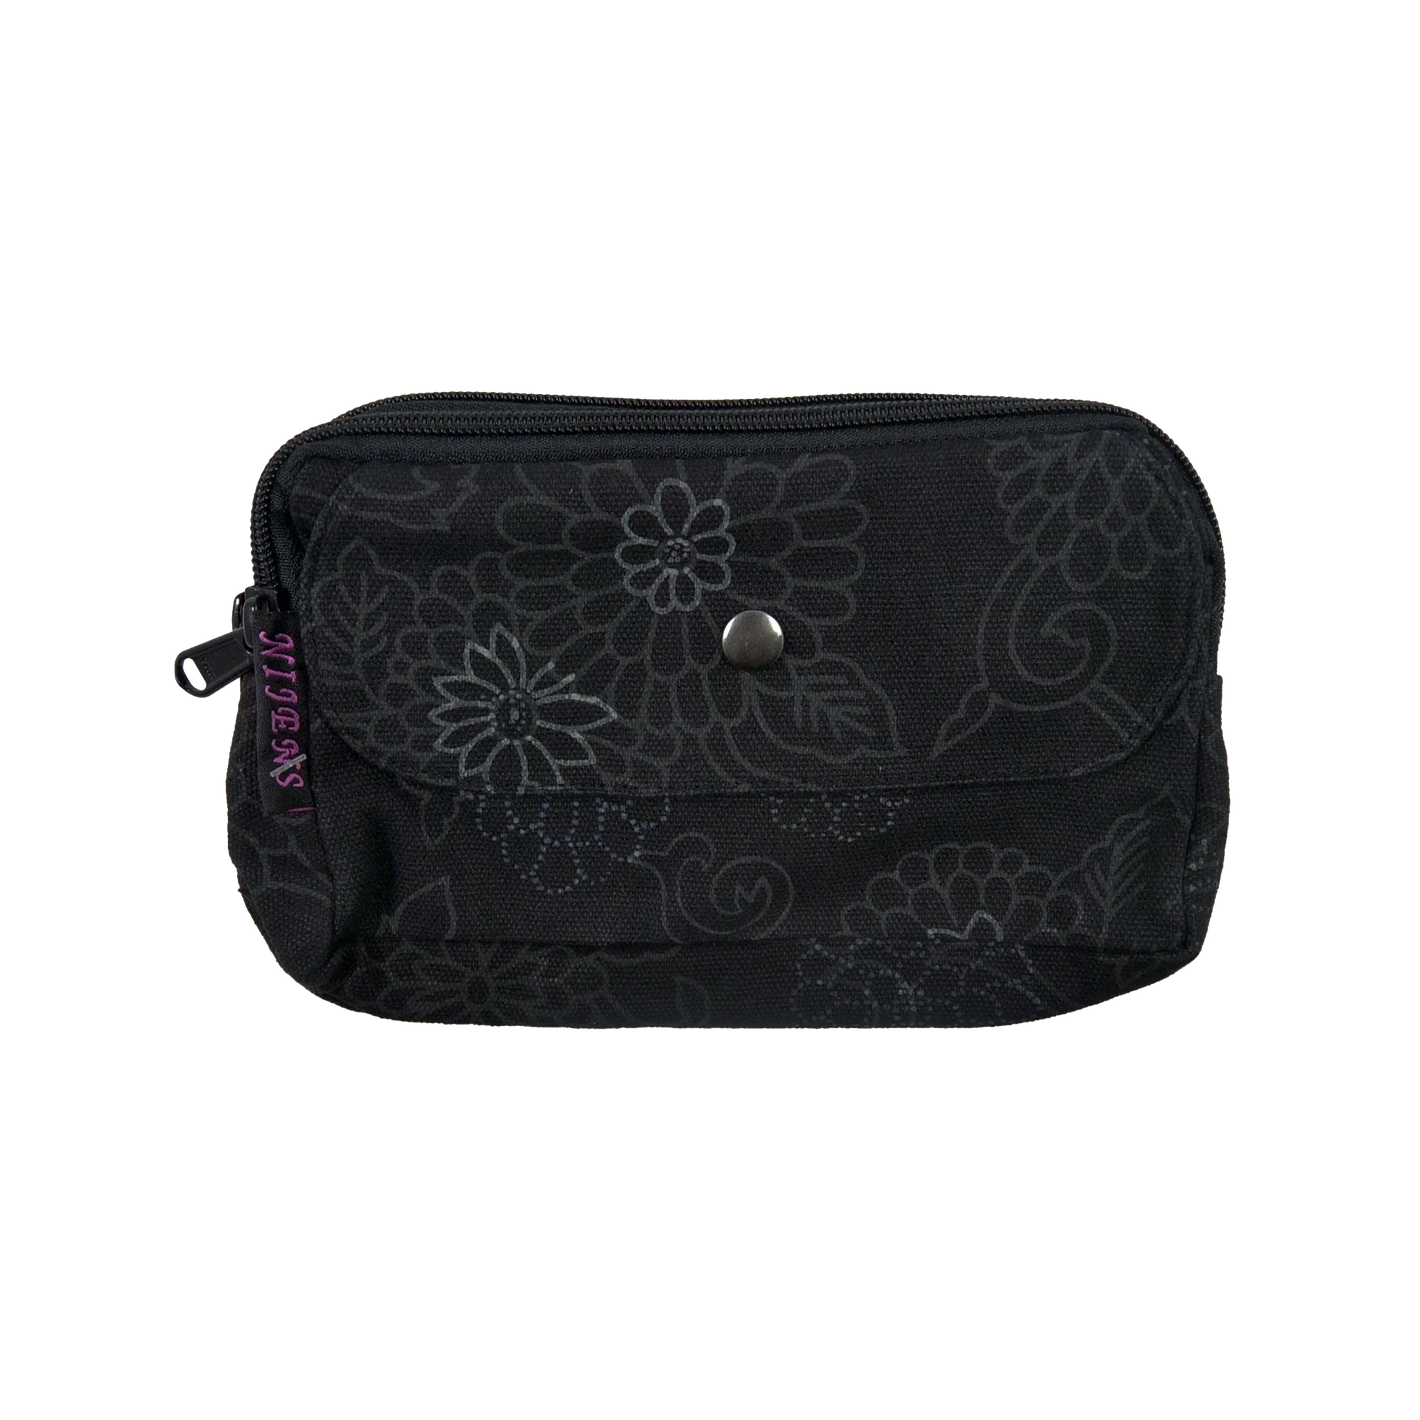 Beuteltasche aus Canvas, schwarz mit floralen Ornamenten. Die Tasche besitzt Reisverschlussfächer und ein Einsteckfach vorne.